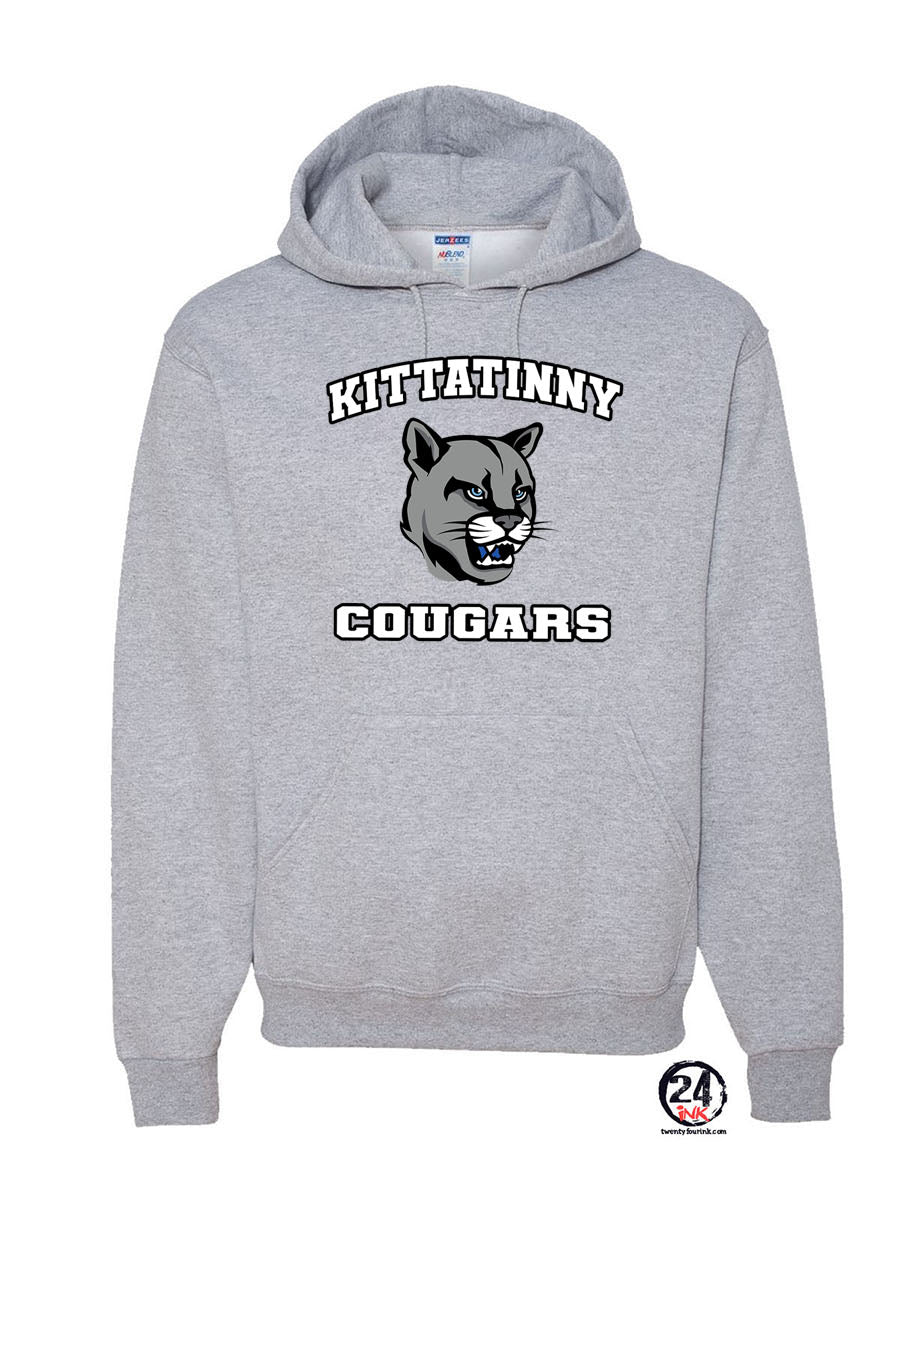 KRHS Design 8 Hooded Sweatshirt